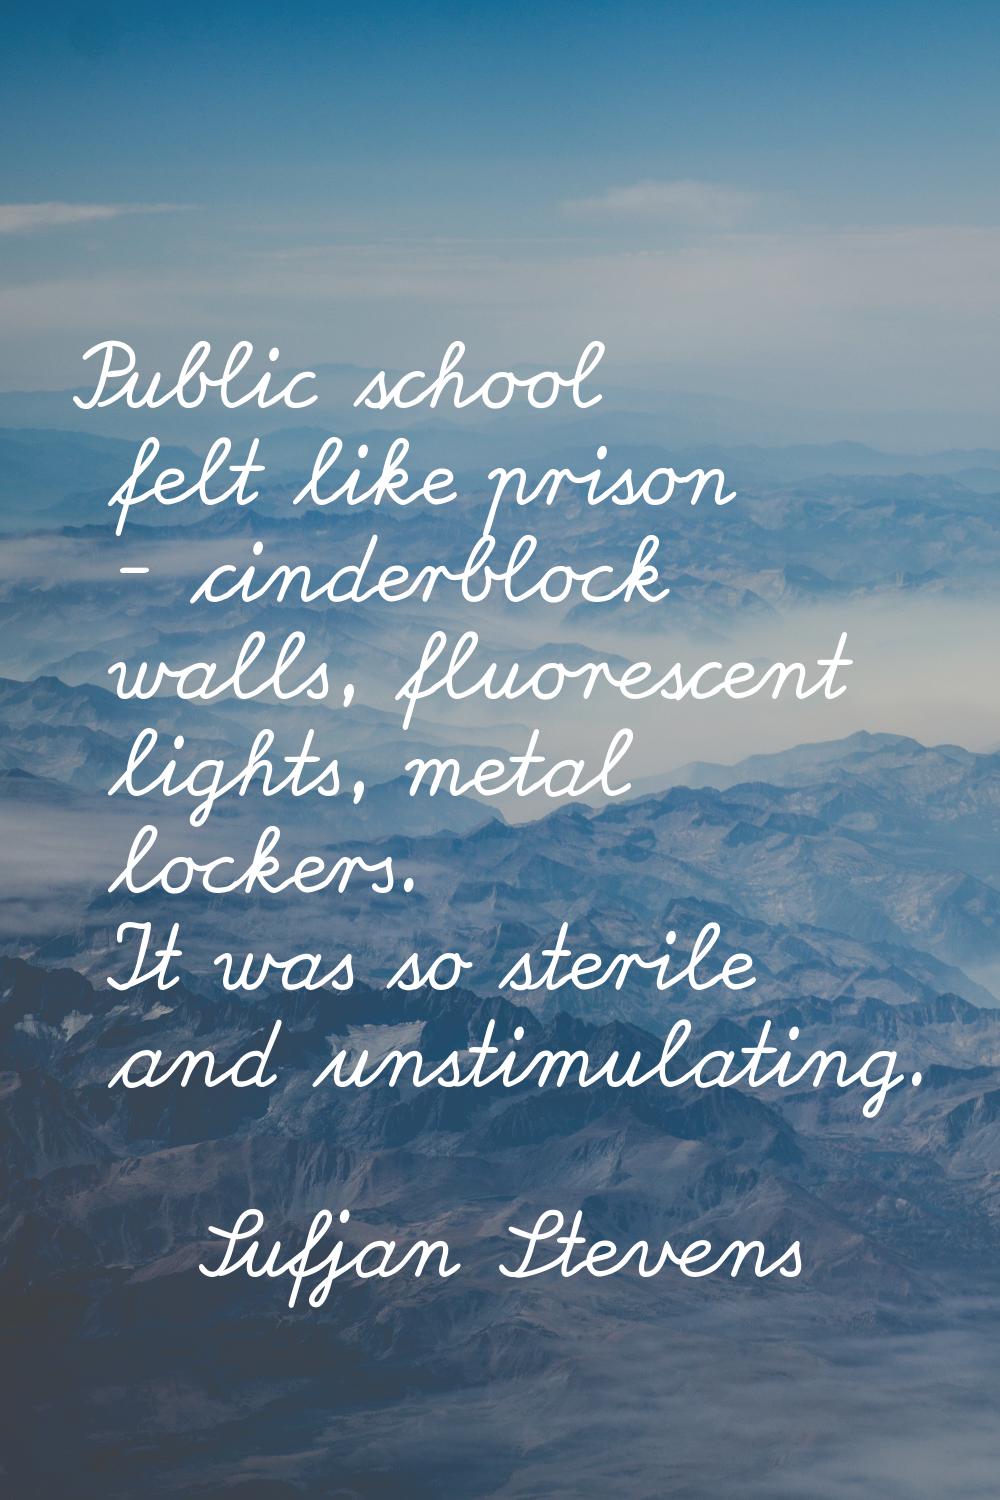 Public school felt like prison - cinderblock walls, fluorescent lights, metal lockers. It was so st